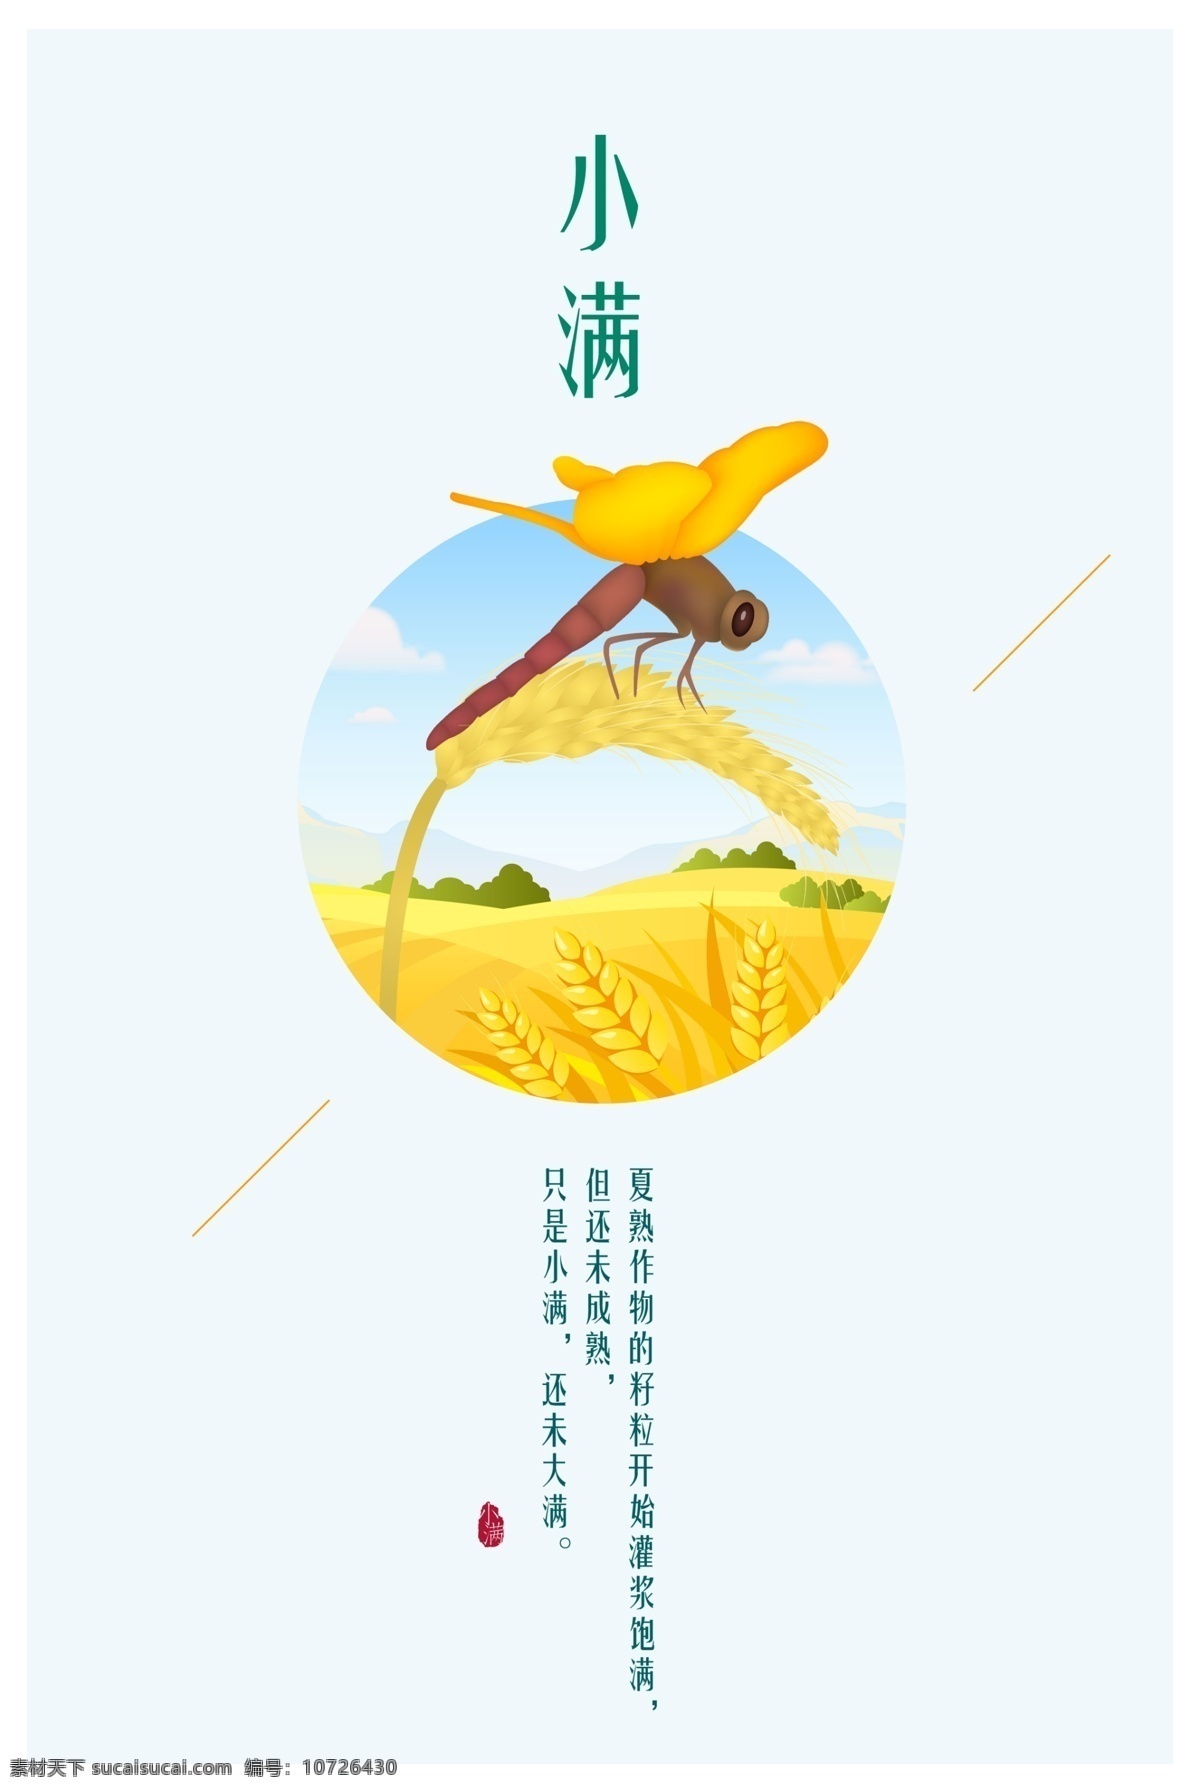 二十四节气 小满 海报 传统文化 节日海报 麦穗 麦子 农作物 清新 五谷 夏天 小麦 小满宣传海报 蜻蜓